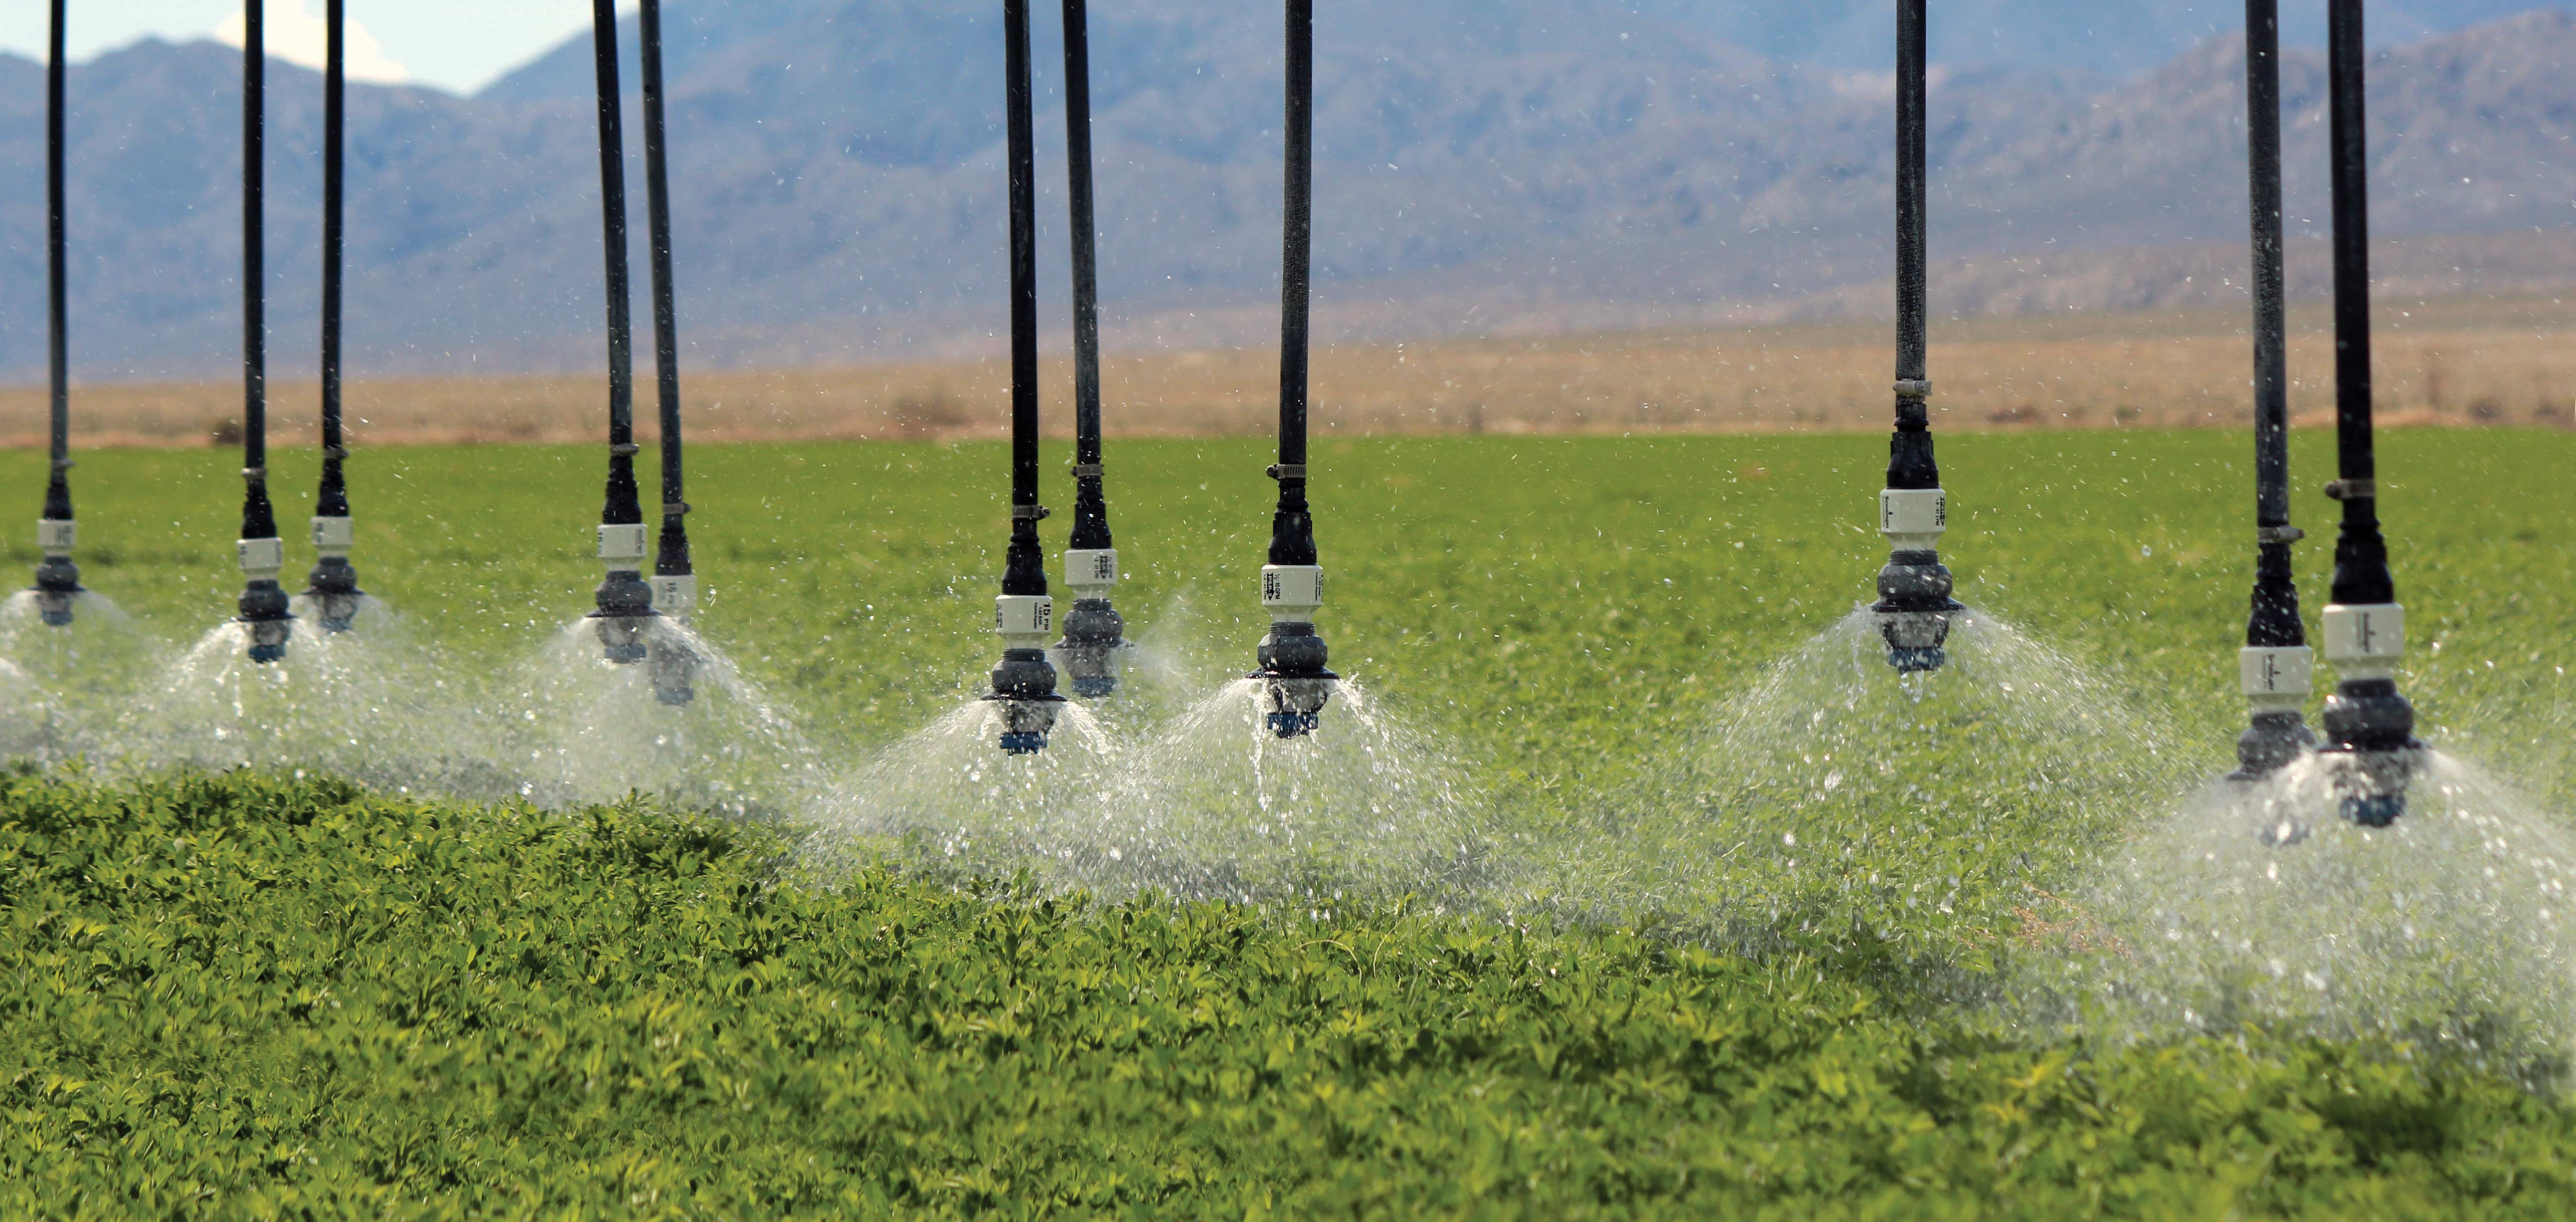  Aspersores Senninger for center pivot irrigation systems